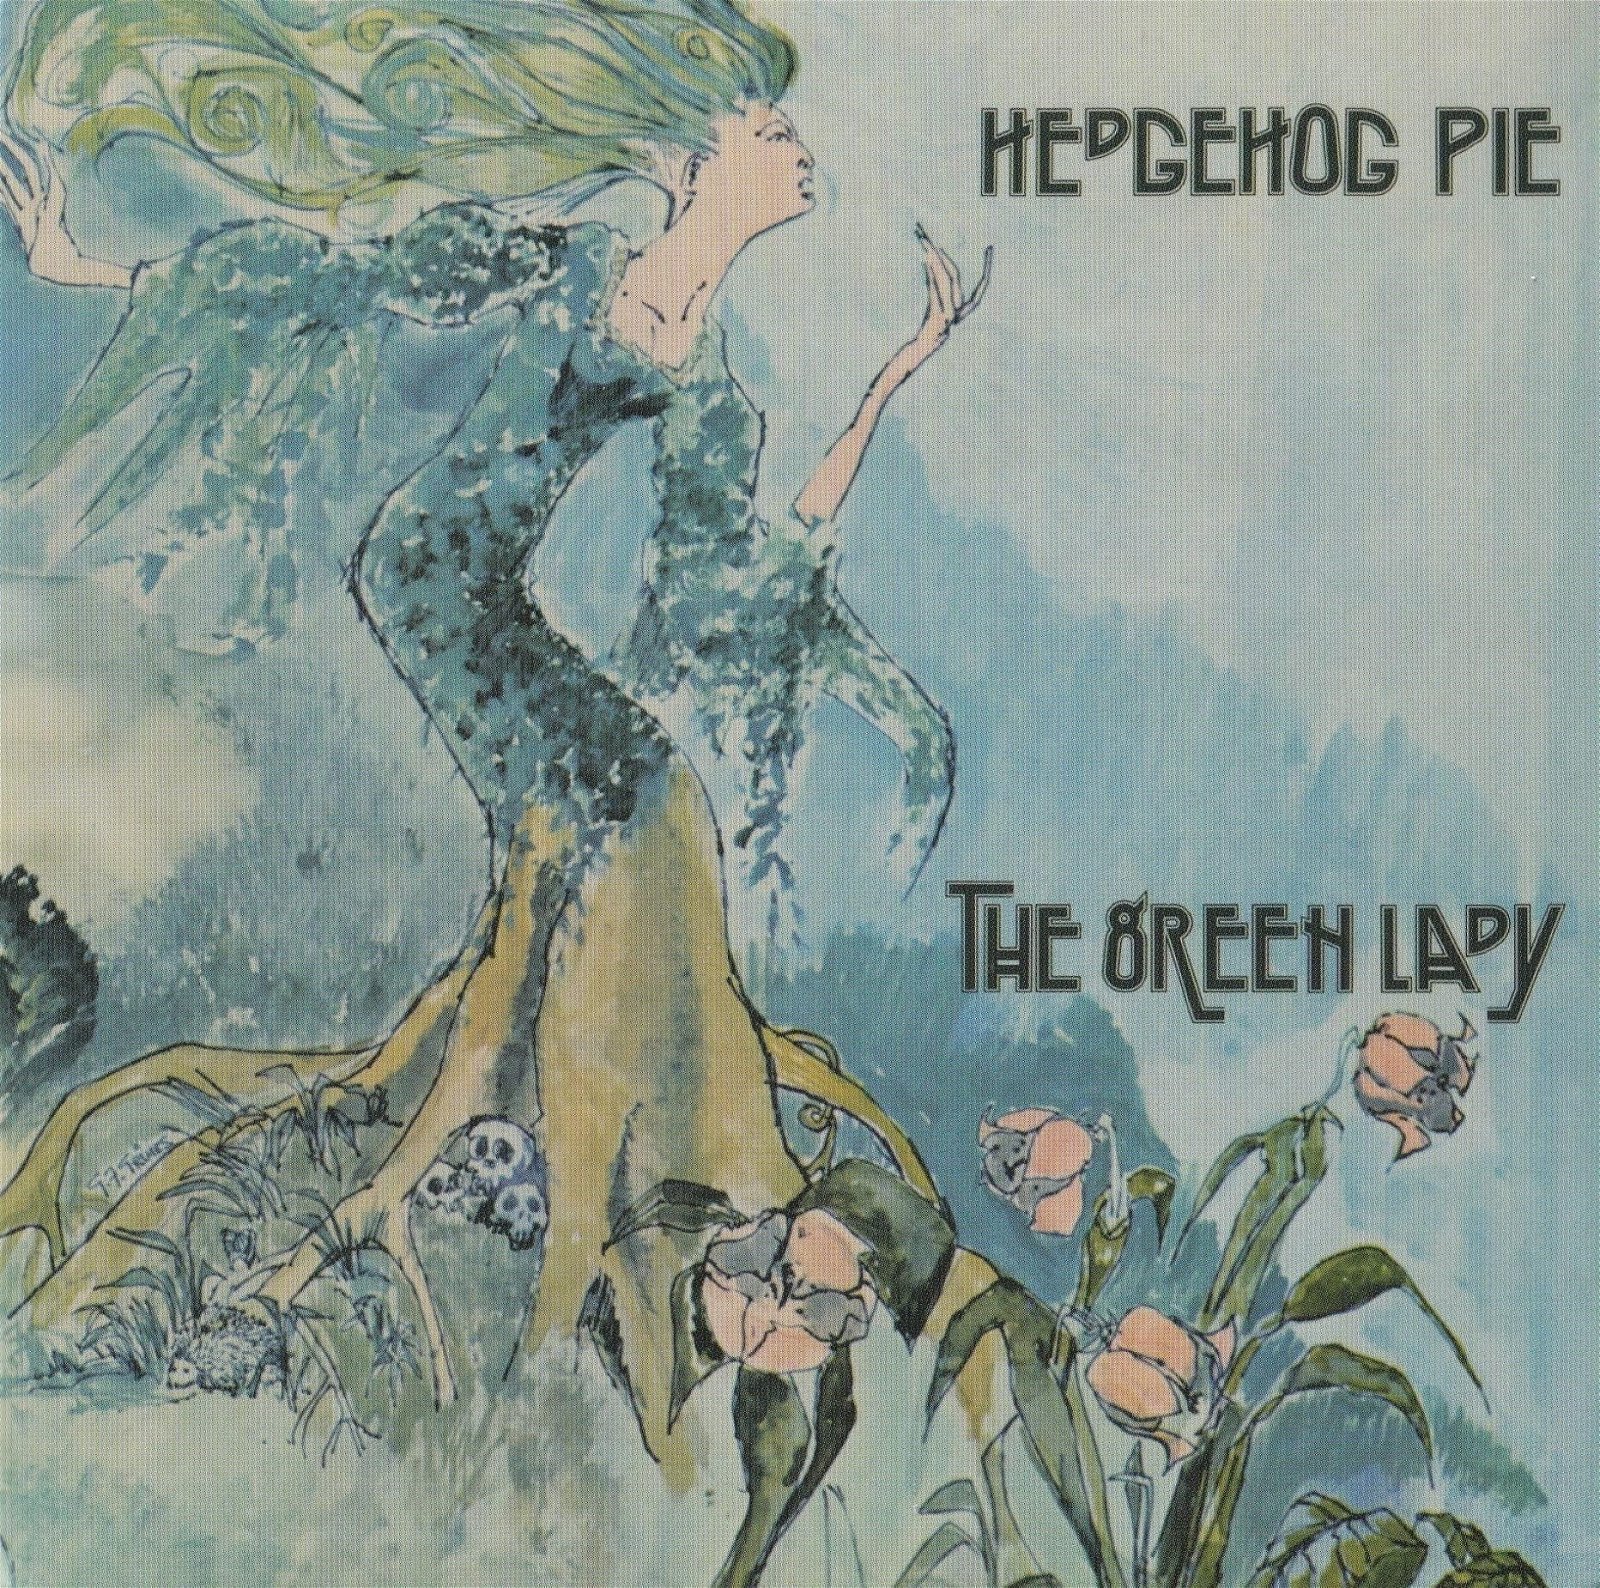 CD Shop - HEDGEHOG PIE GREEN LADY